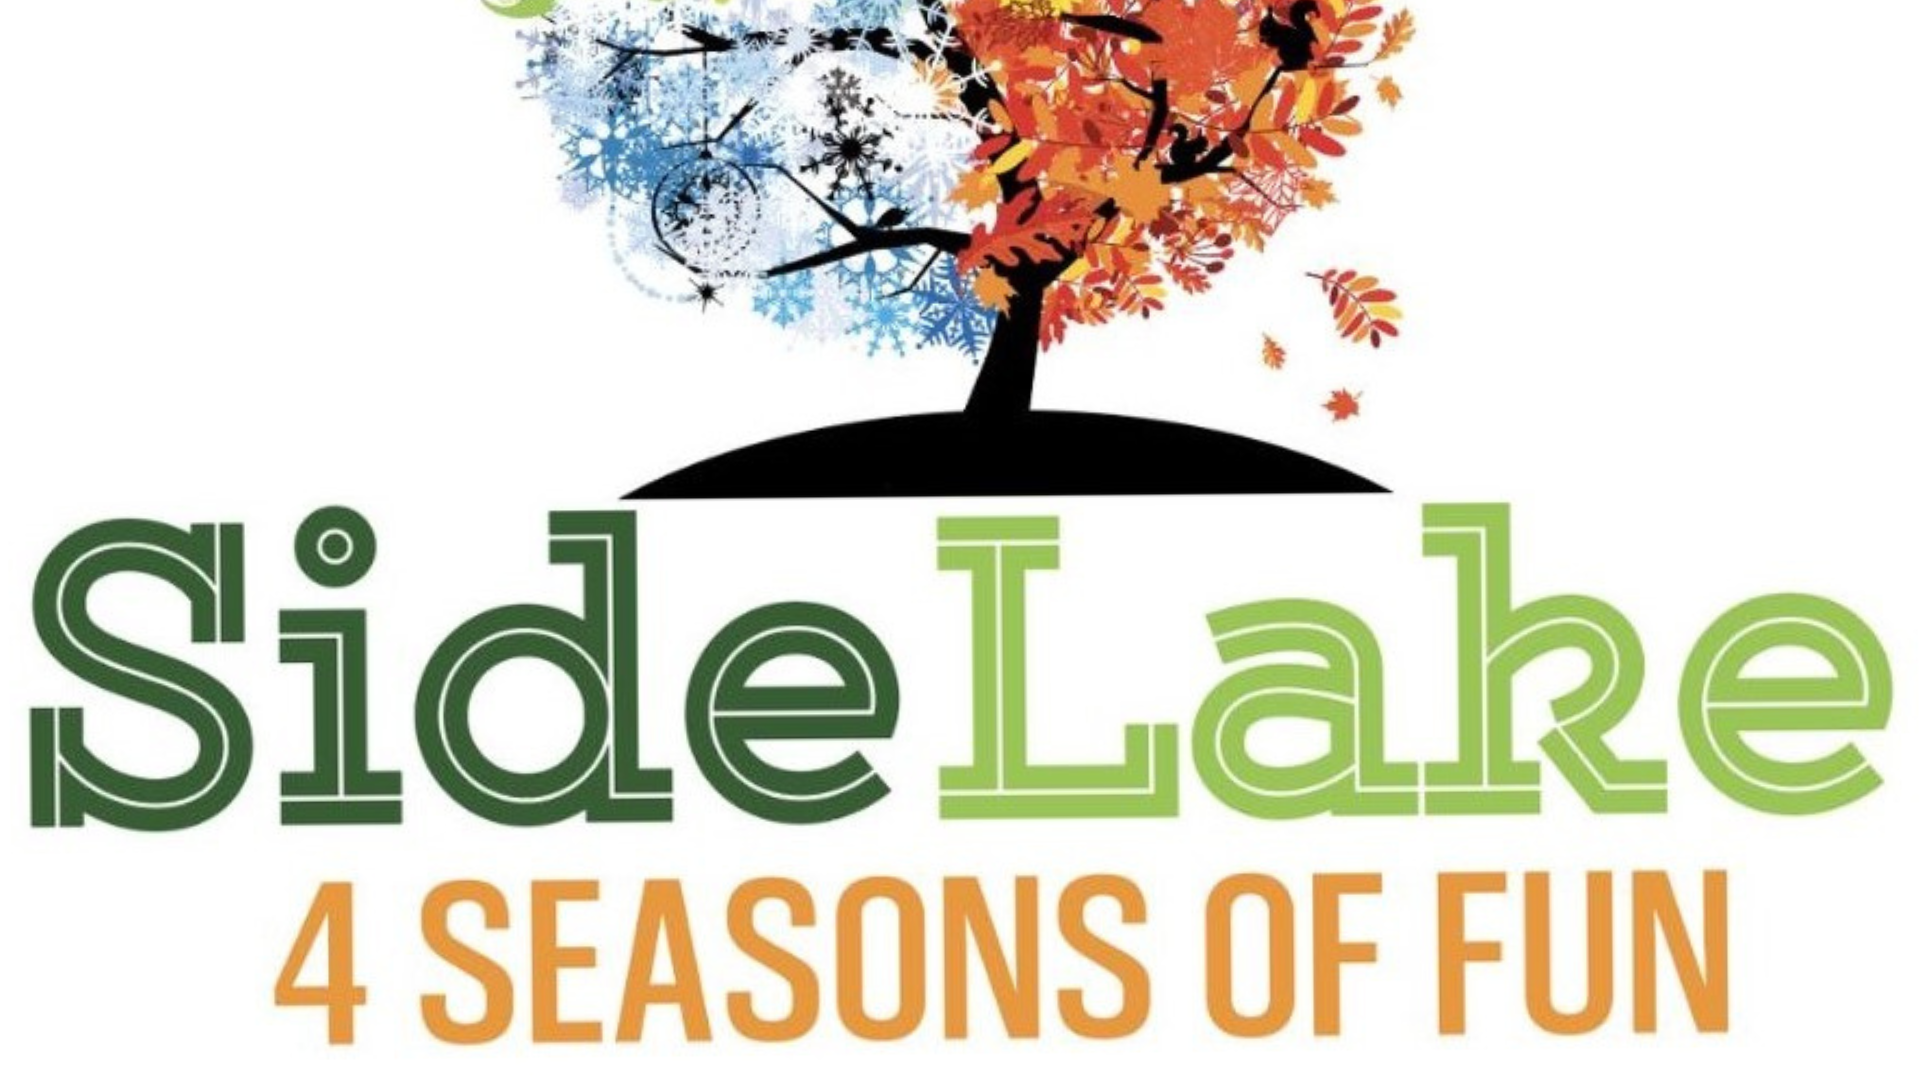 4 Seasons Logo